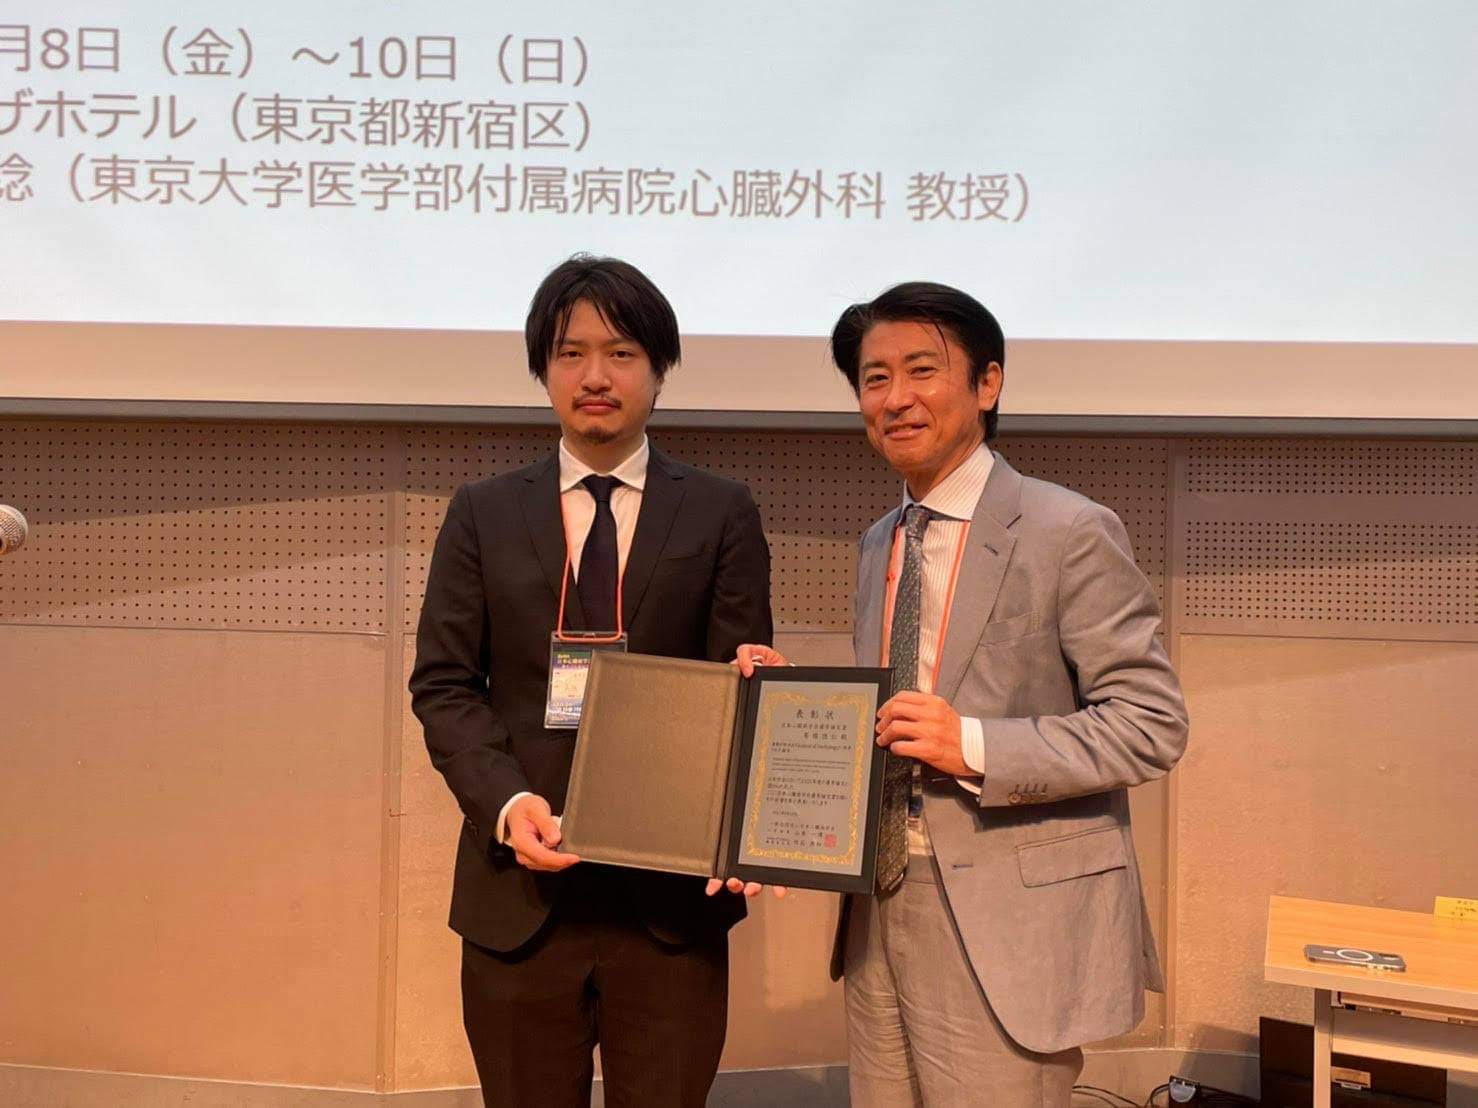 高橋徳仁先生が、第69回日本心臓病学会学術集会で年間優秀論文賞に選ばれ表彰されました!